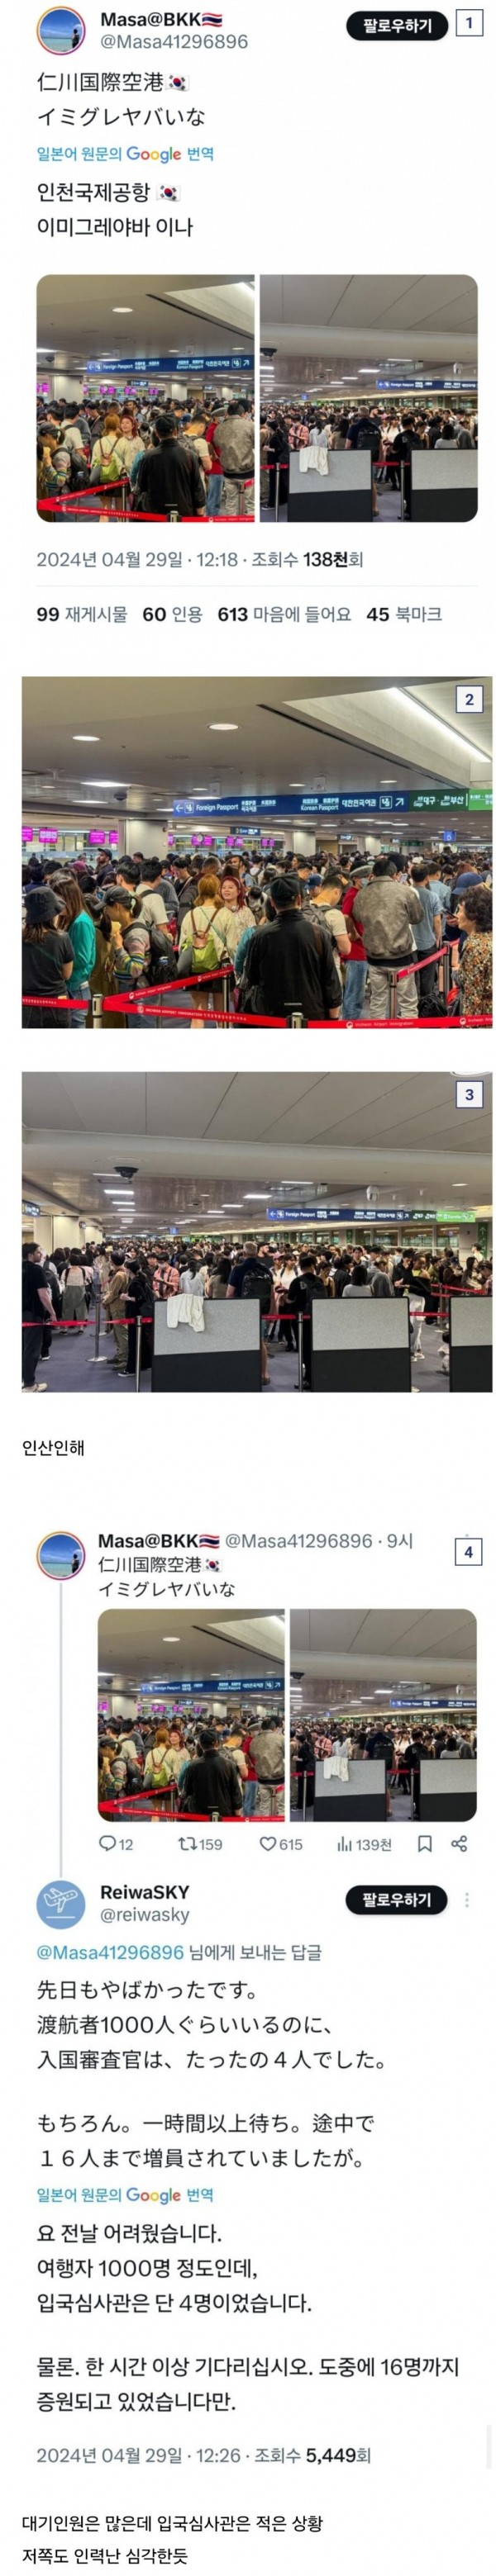 한국인들은 잘 모르는 요즘 인천공항 입국심사